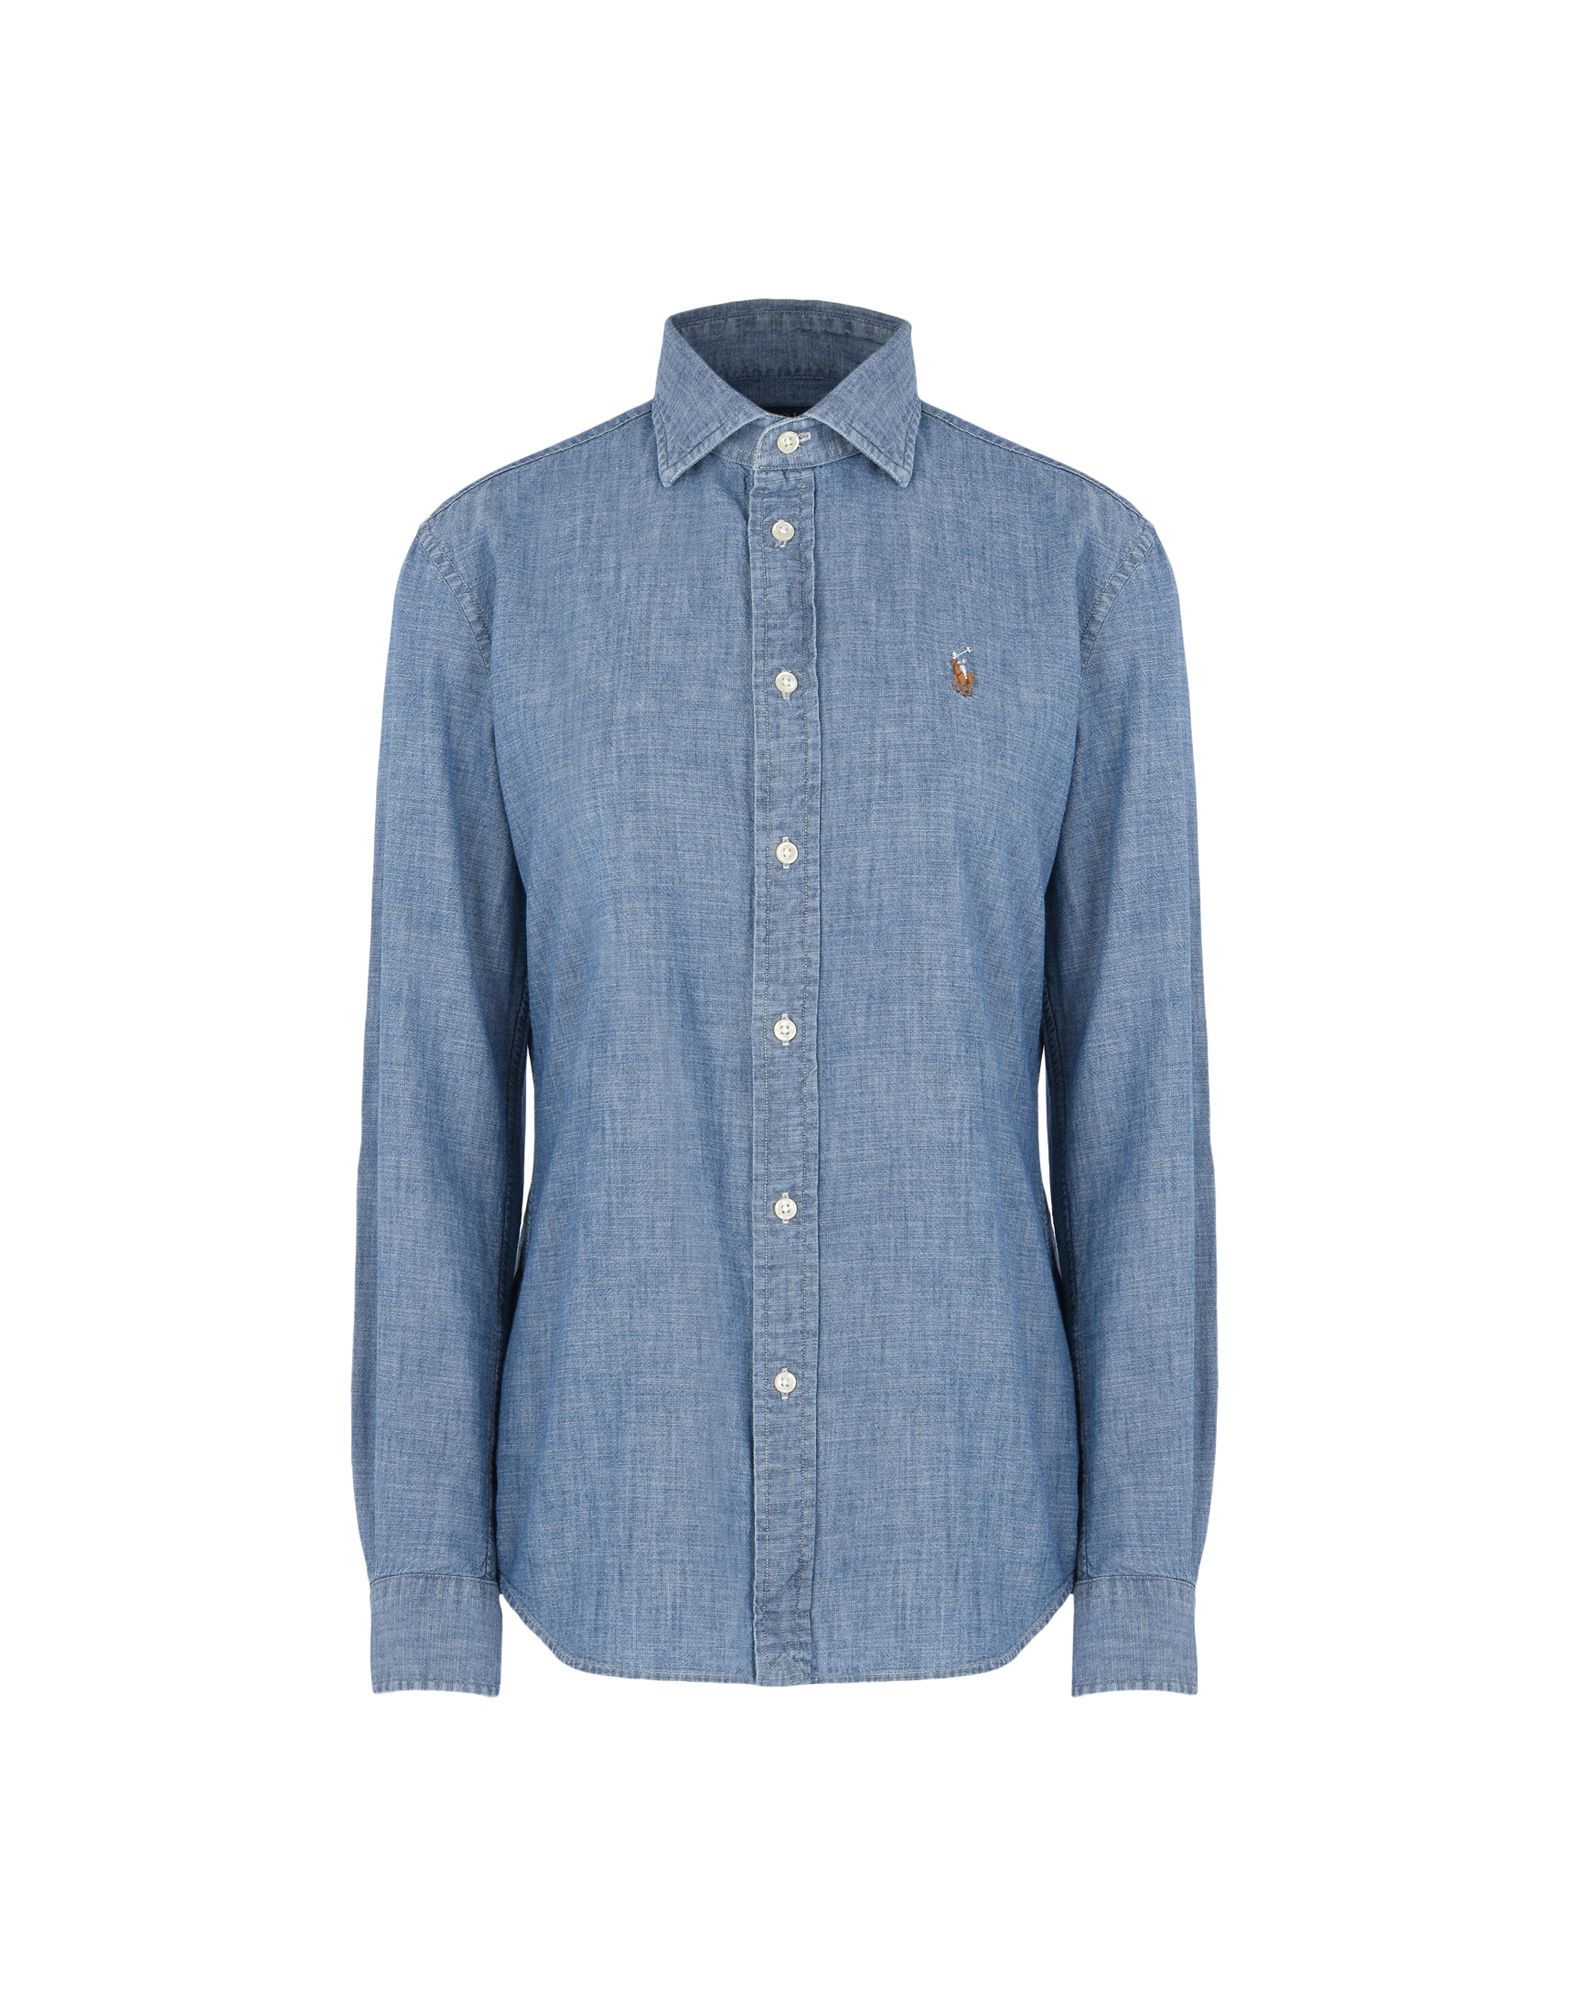 《送料無料》POLO RALPH LAUREN レディース デニムシャツ ブルー 2 コットン 100% Slim Fit Chambray Shirt